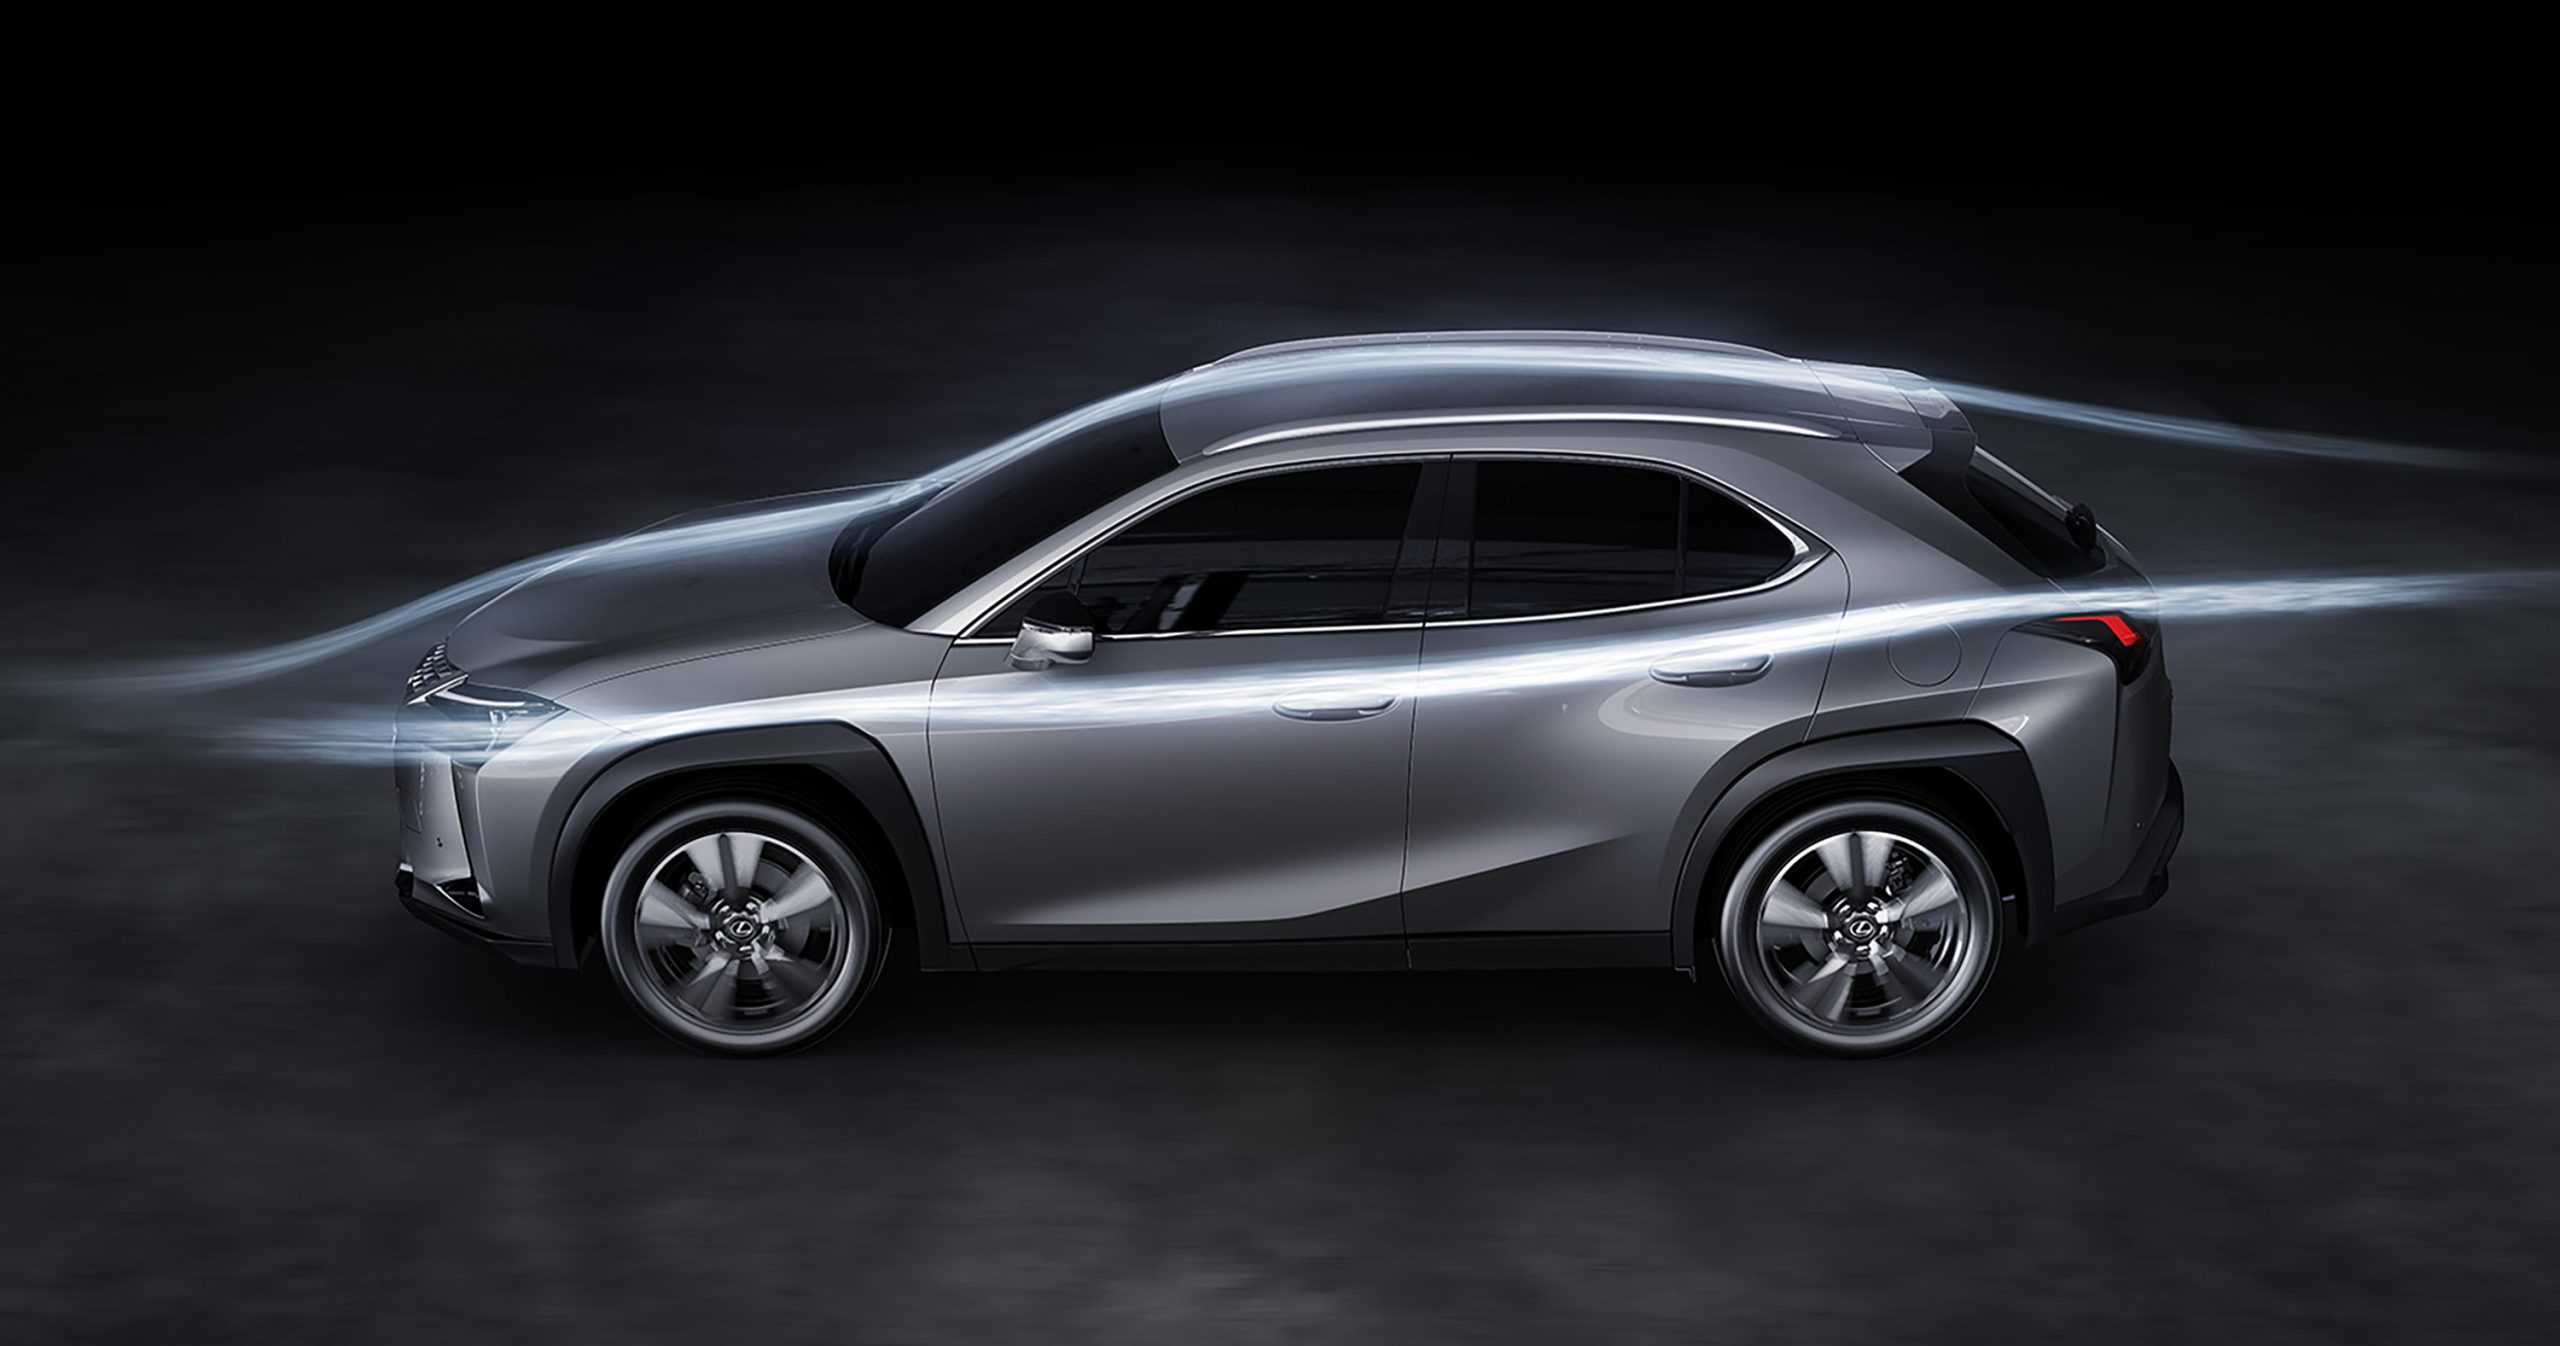 Galería: Innovaciones aerodinámicas pioneras aportan un mayor dinamismo al nuevo Lexus UX 250h